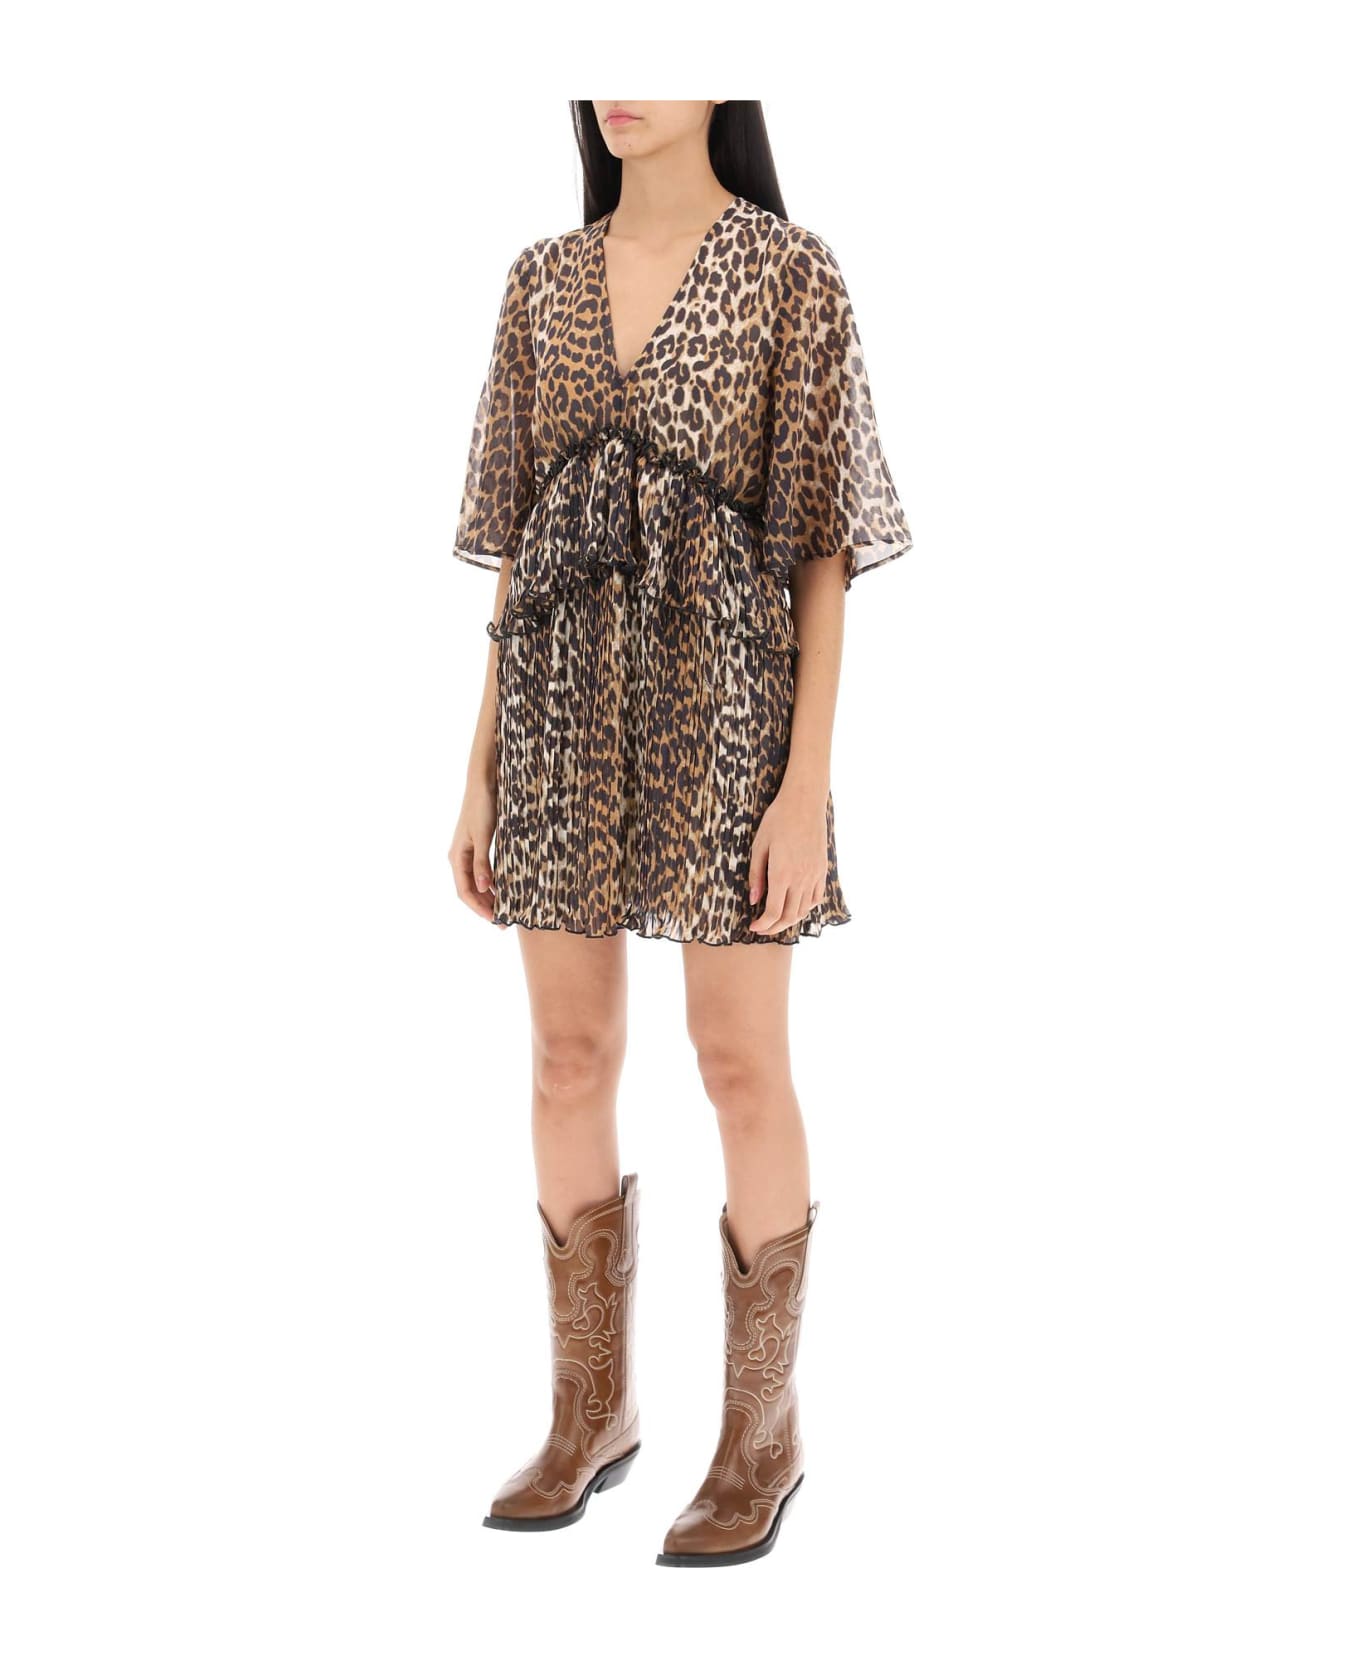 Ganni Pleated Mini Dress With Leopard Motif - ALMOND MILK (Beige)